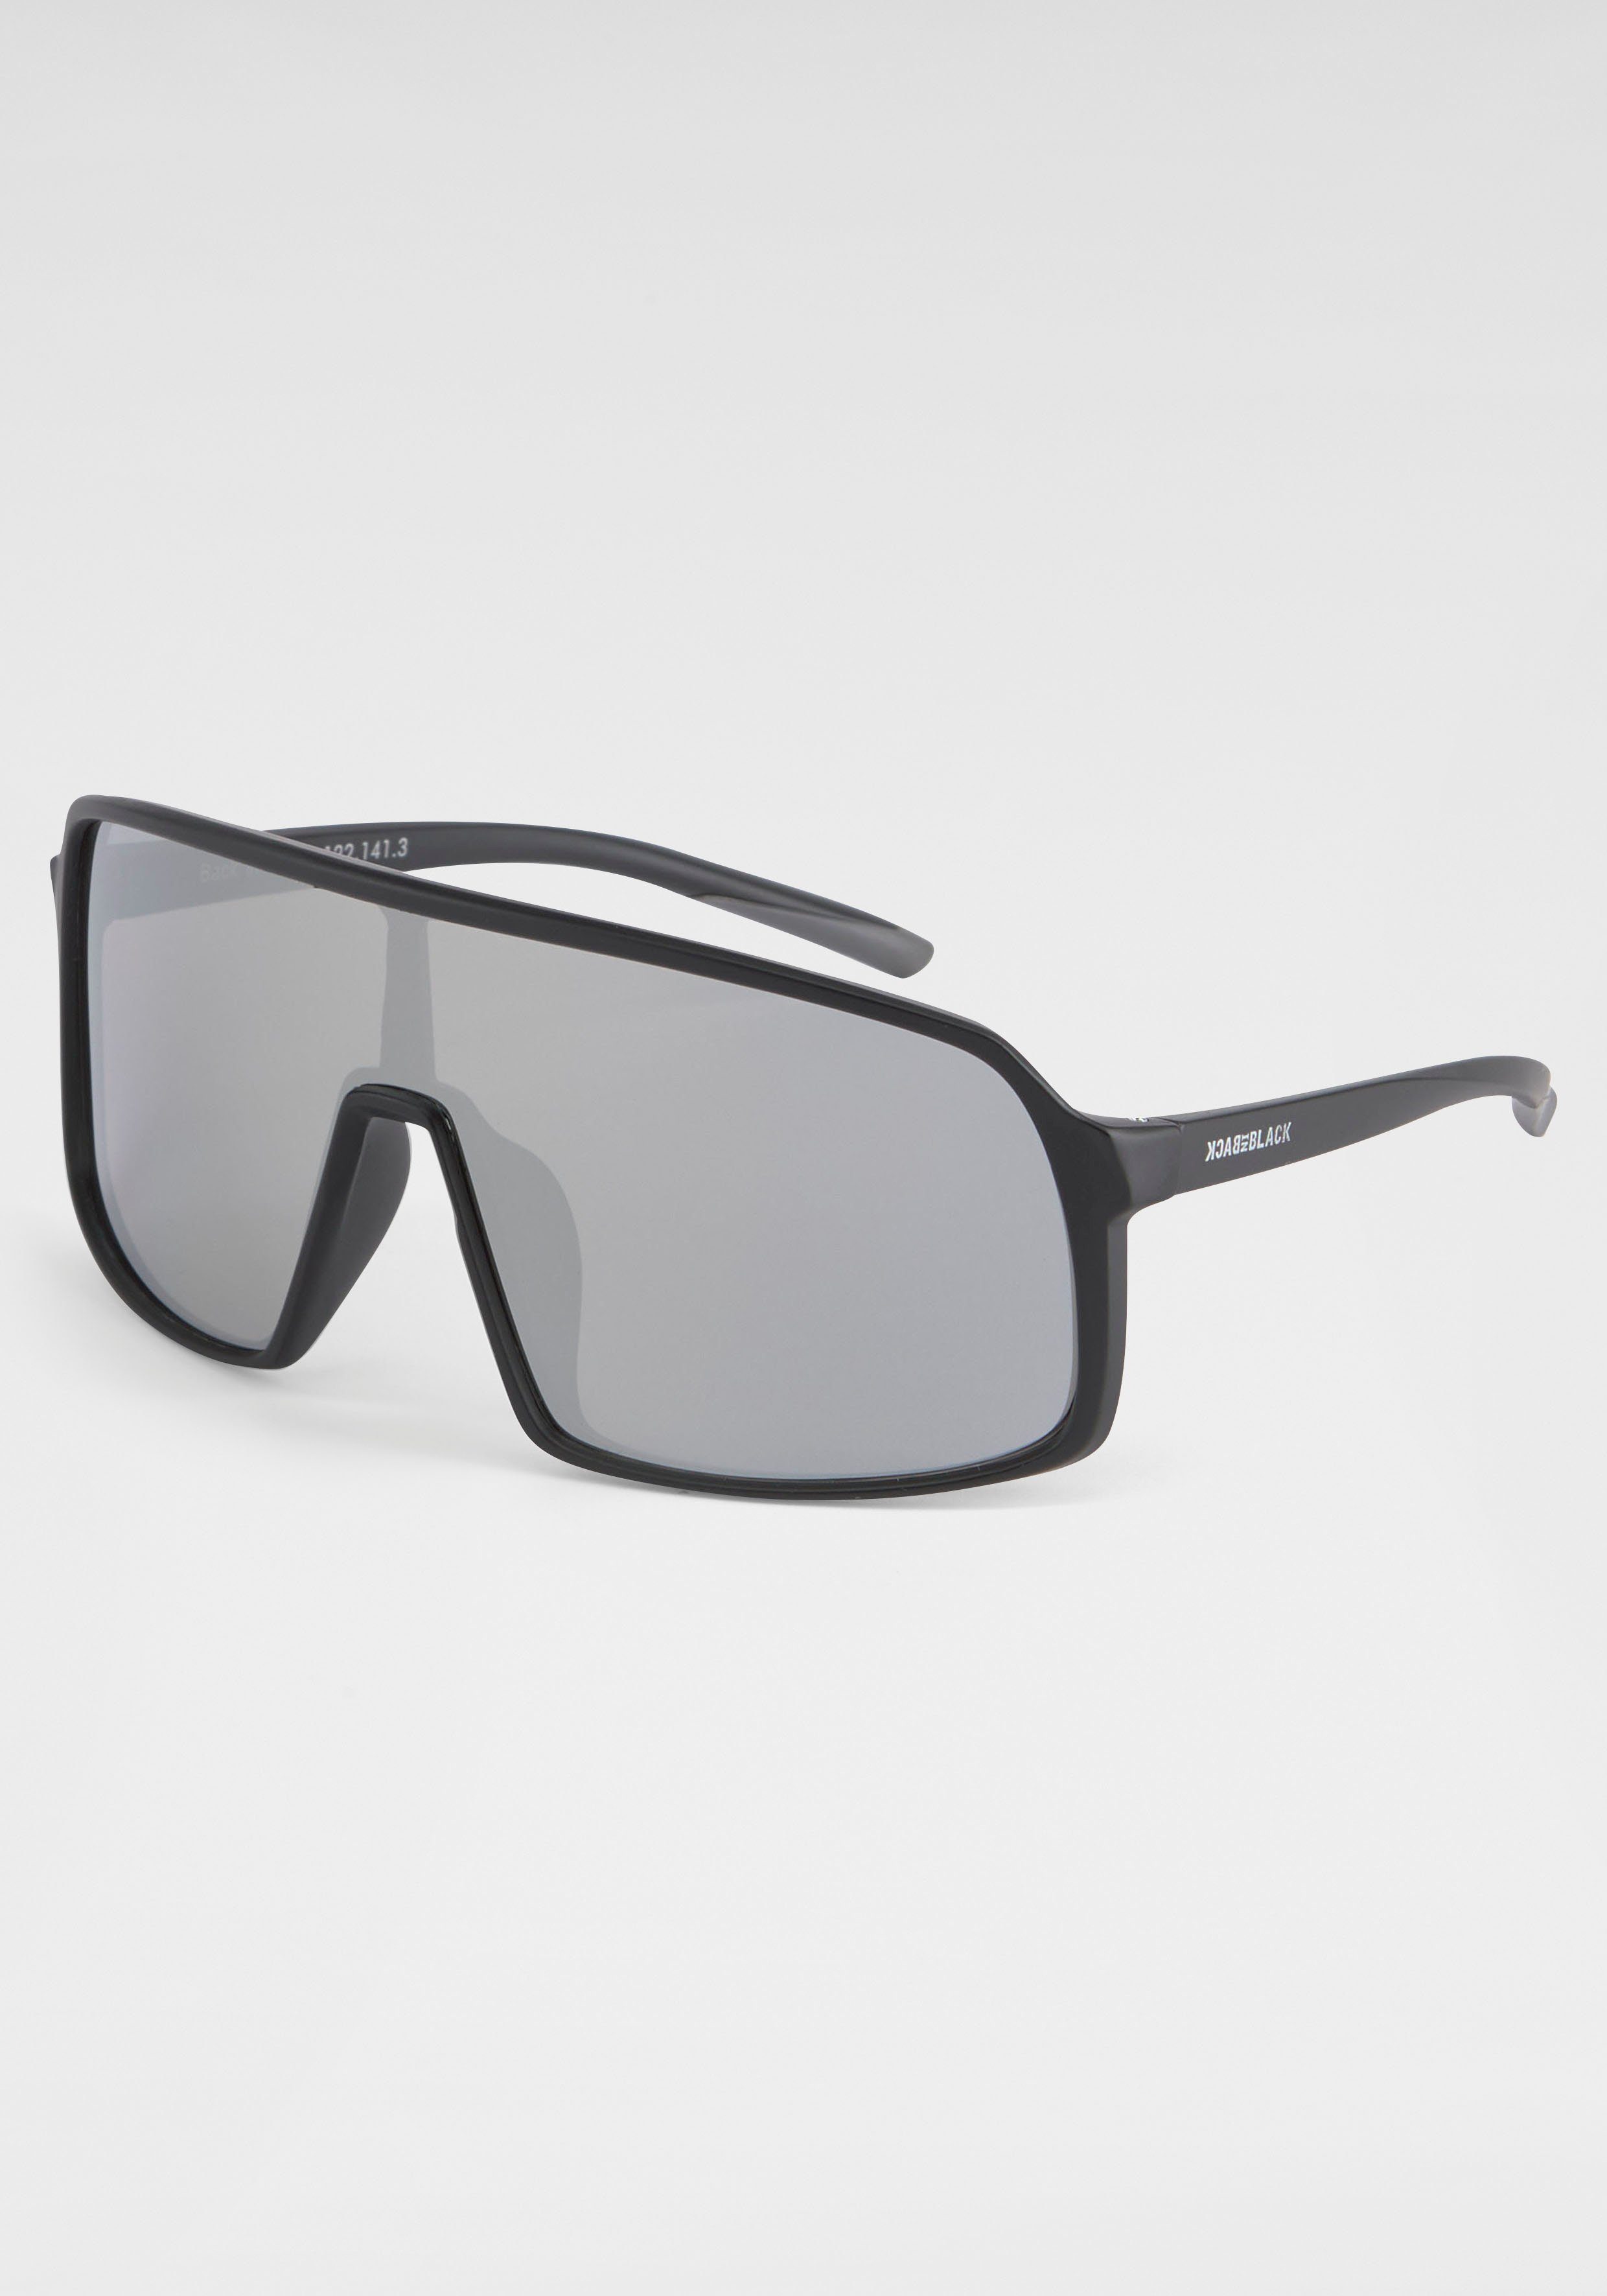 BACK IN BLACK schwarz-silber Gläser Eyewear Sonnenbrille große